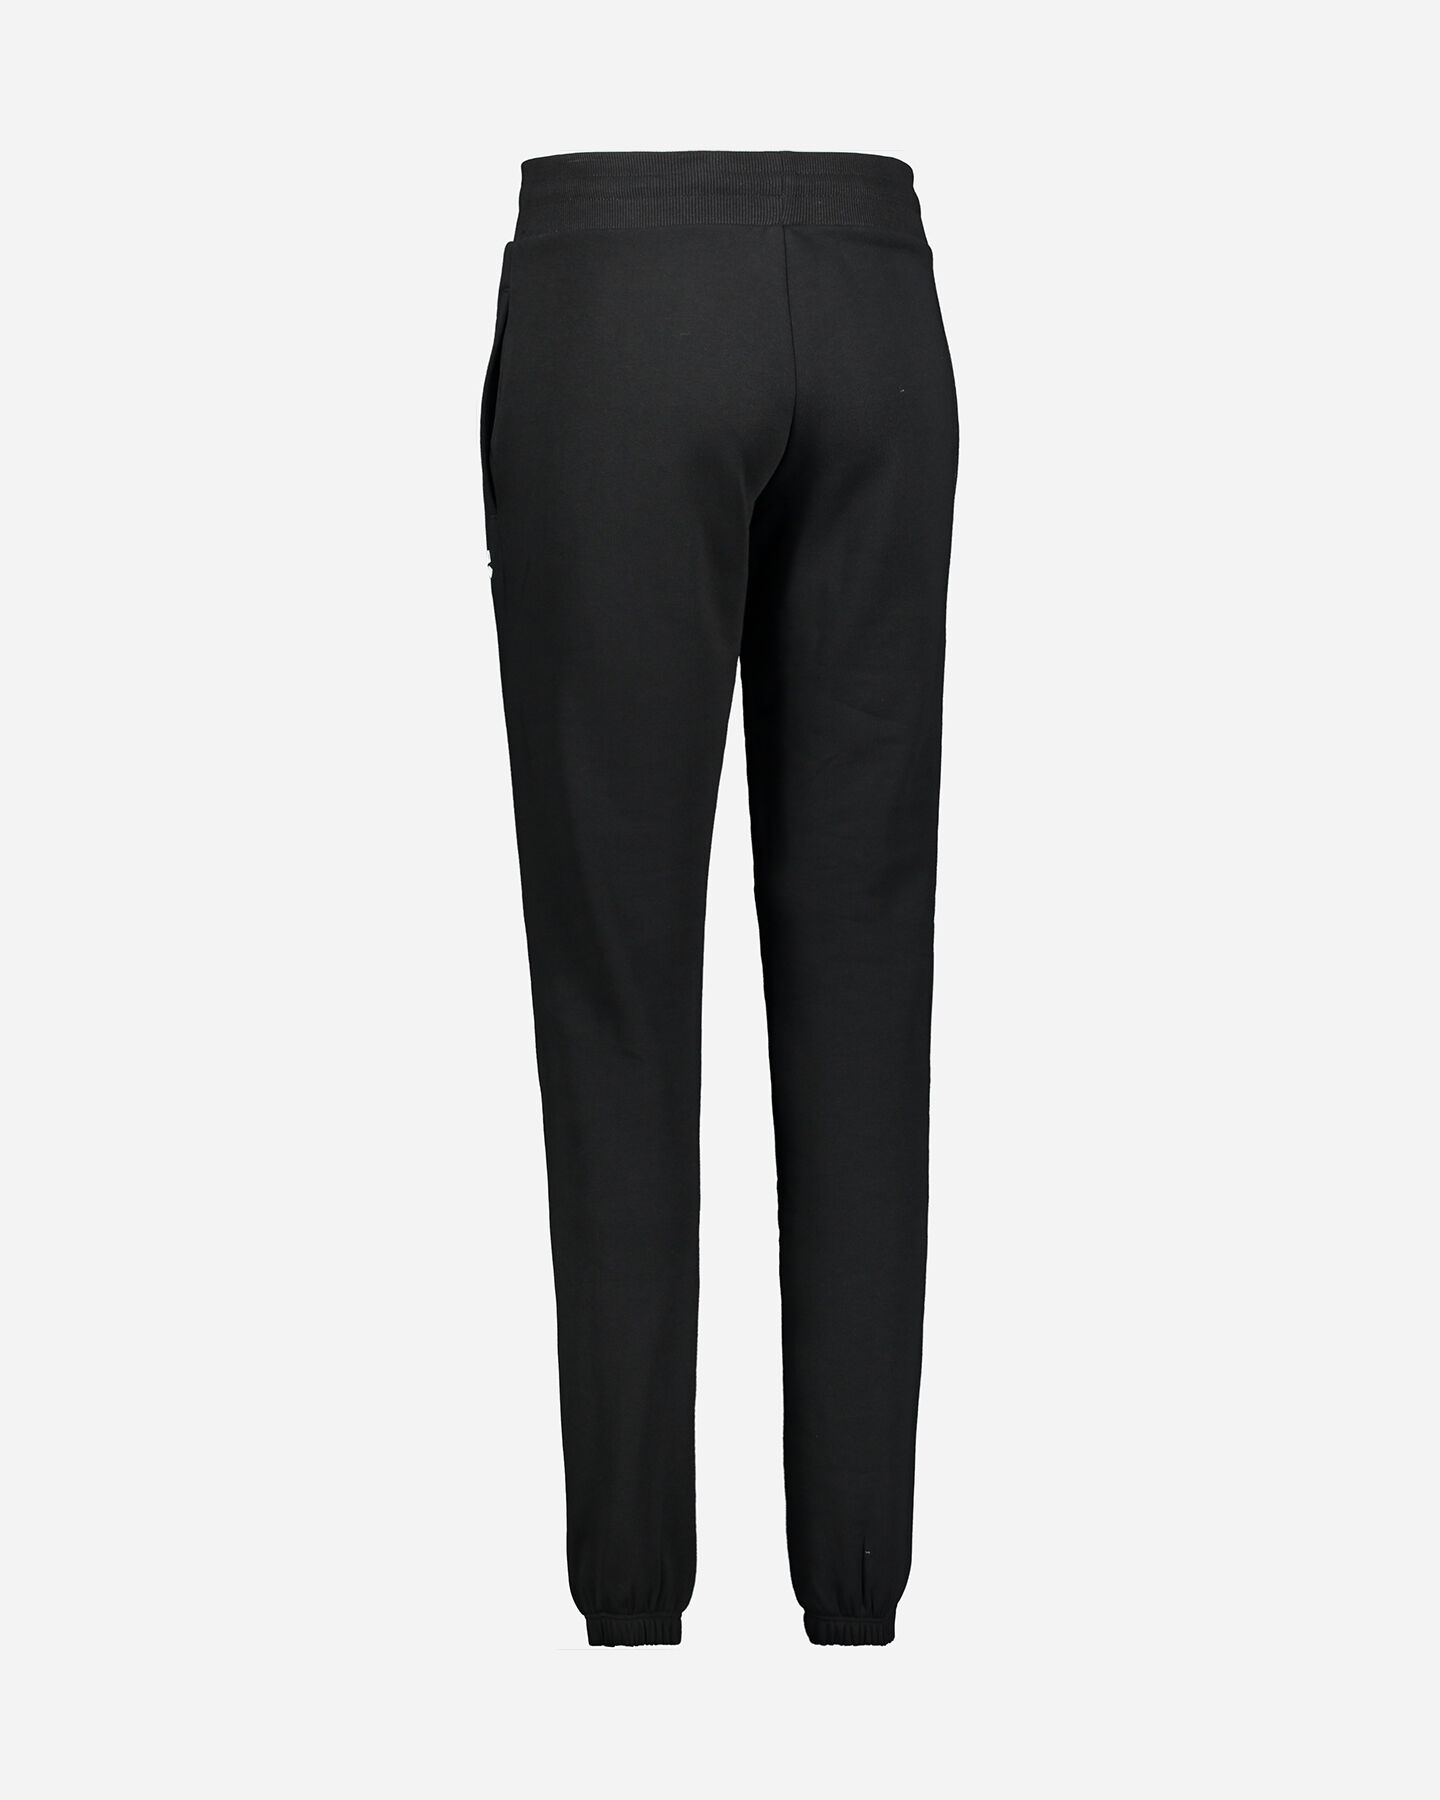  Pantalone ARENA CLASSIC W S4081070|050|S scatto 2